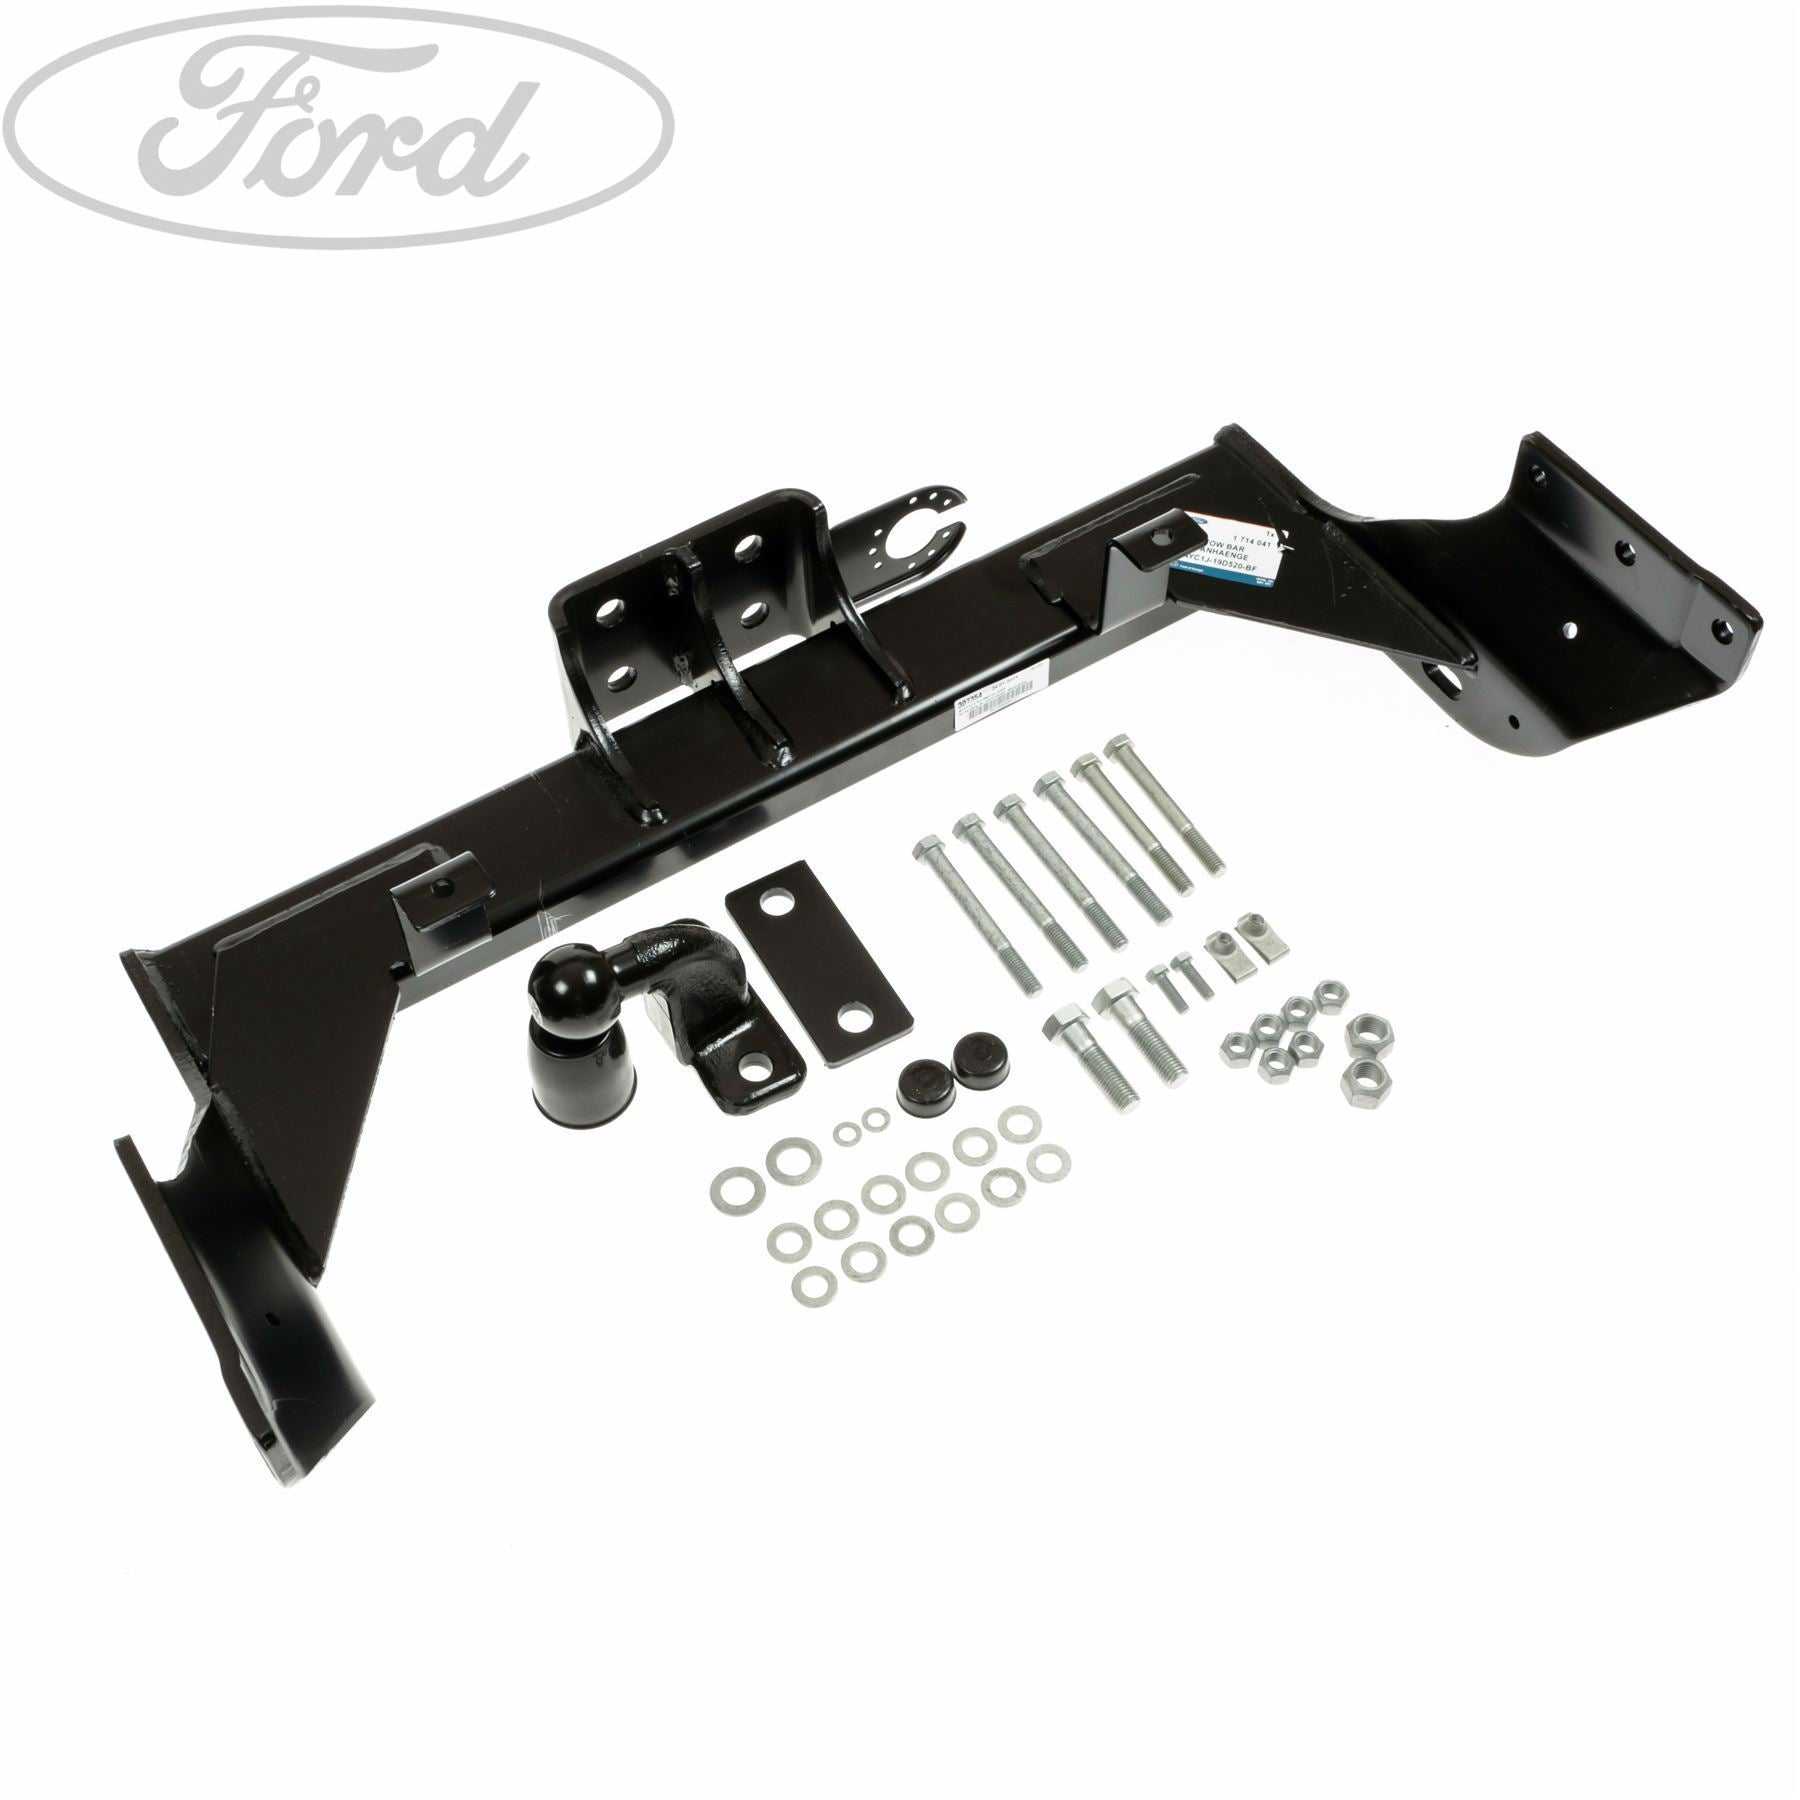 Ford, TRANSIT TOW BAR BRACKET KIT 2000-2006